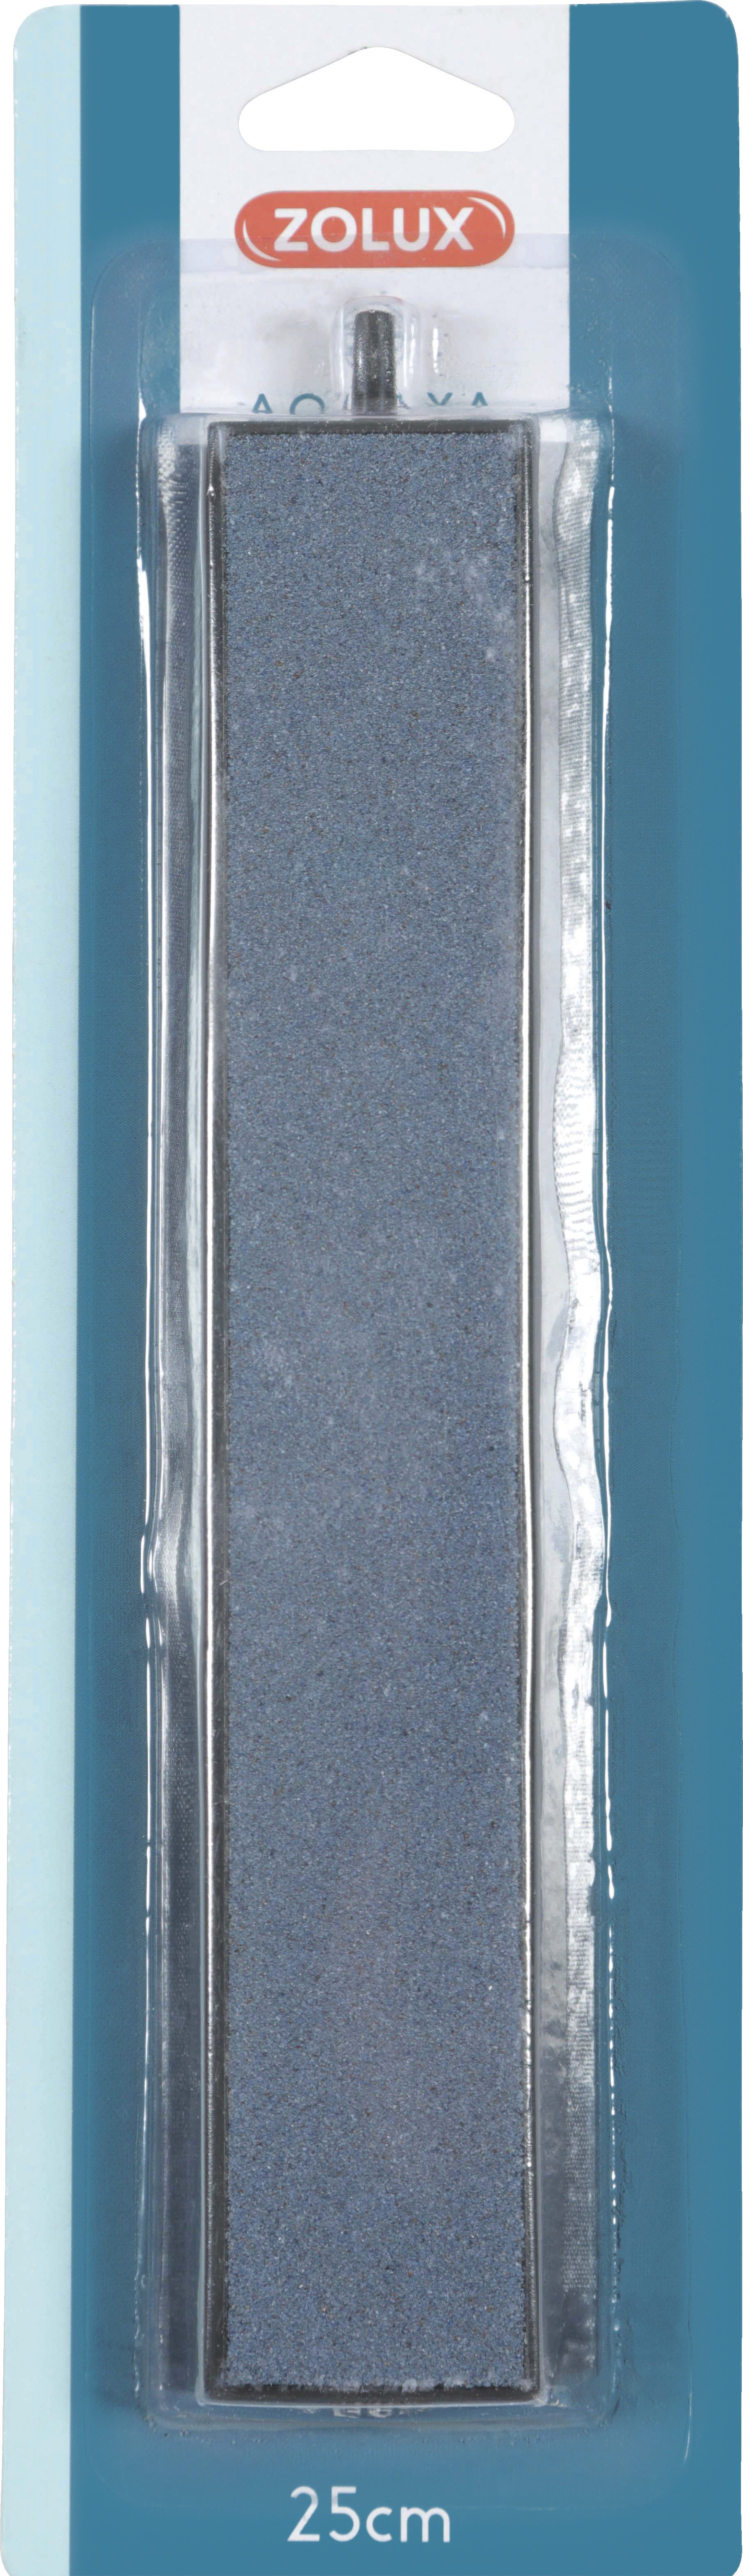 Piedra difusora de aire Nanolife Zolux - rectangular 25 cm